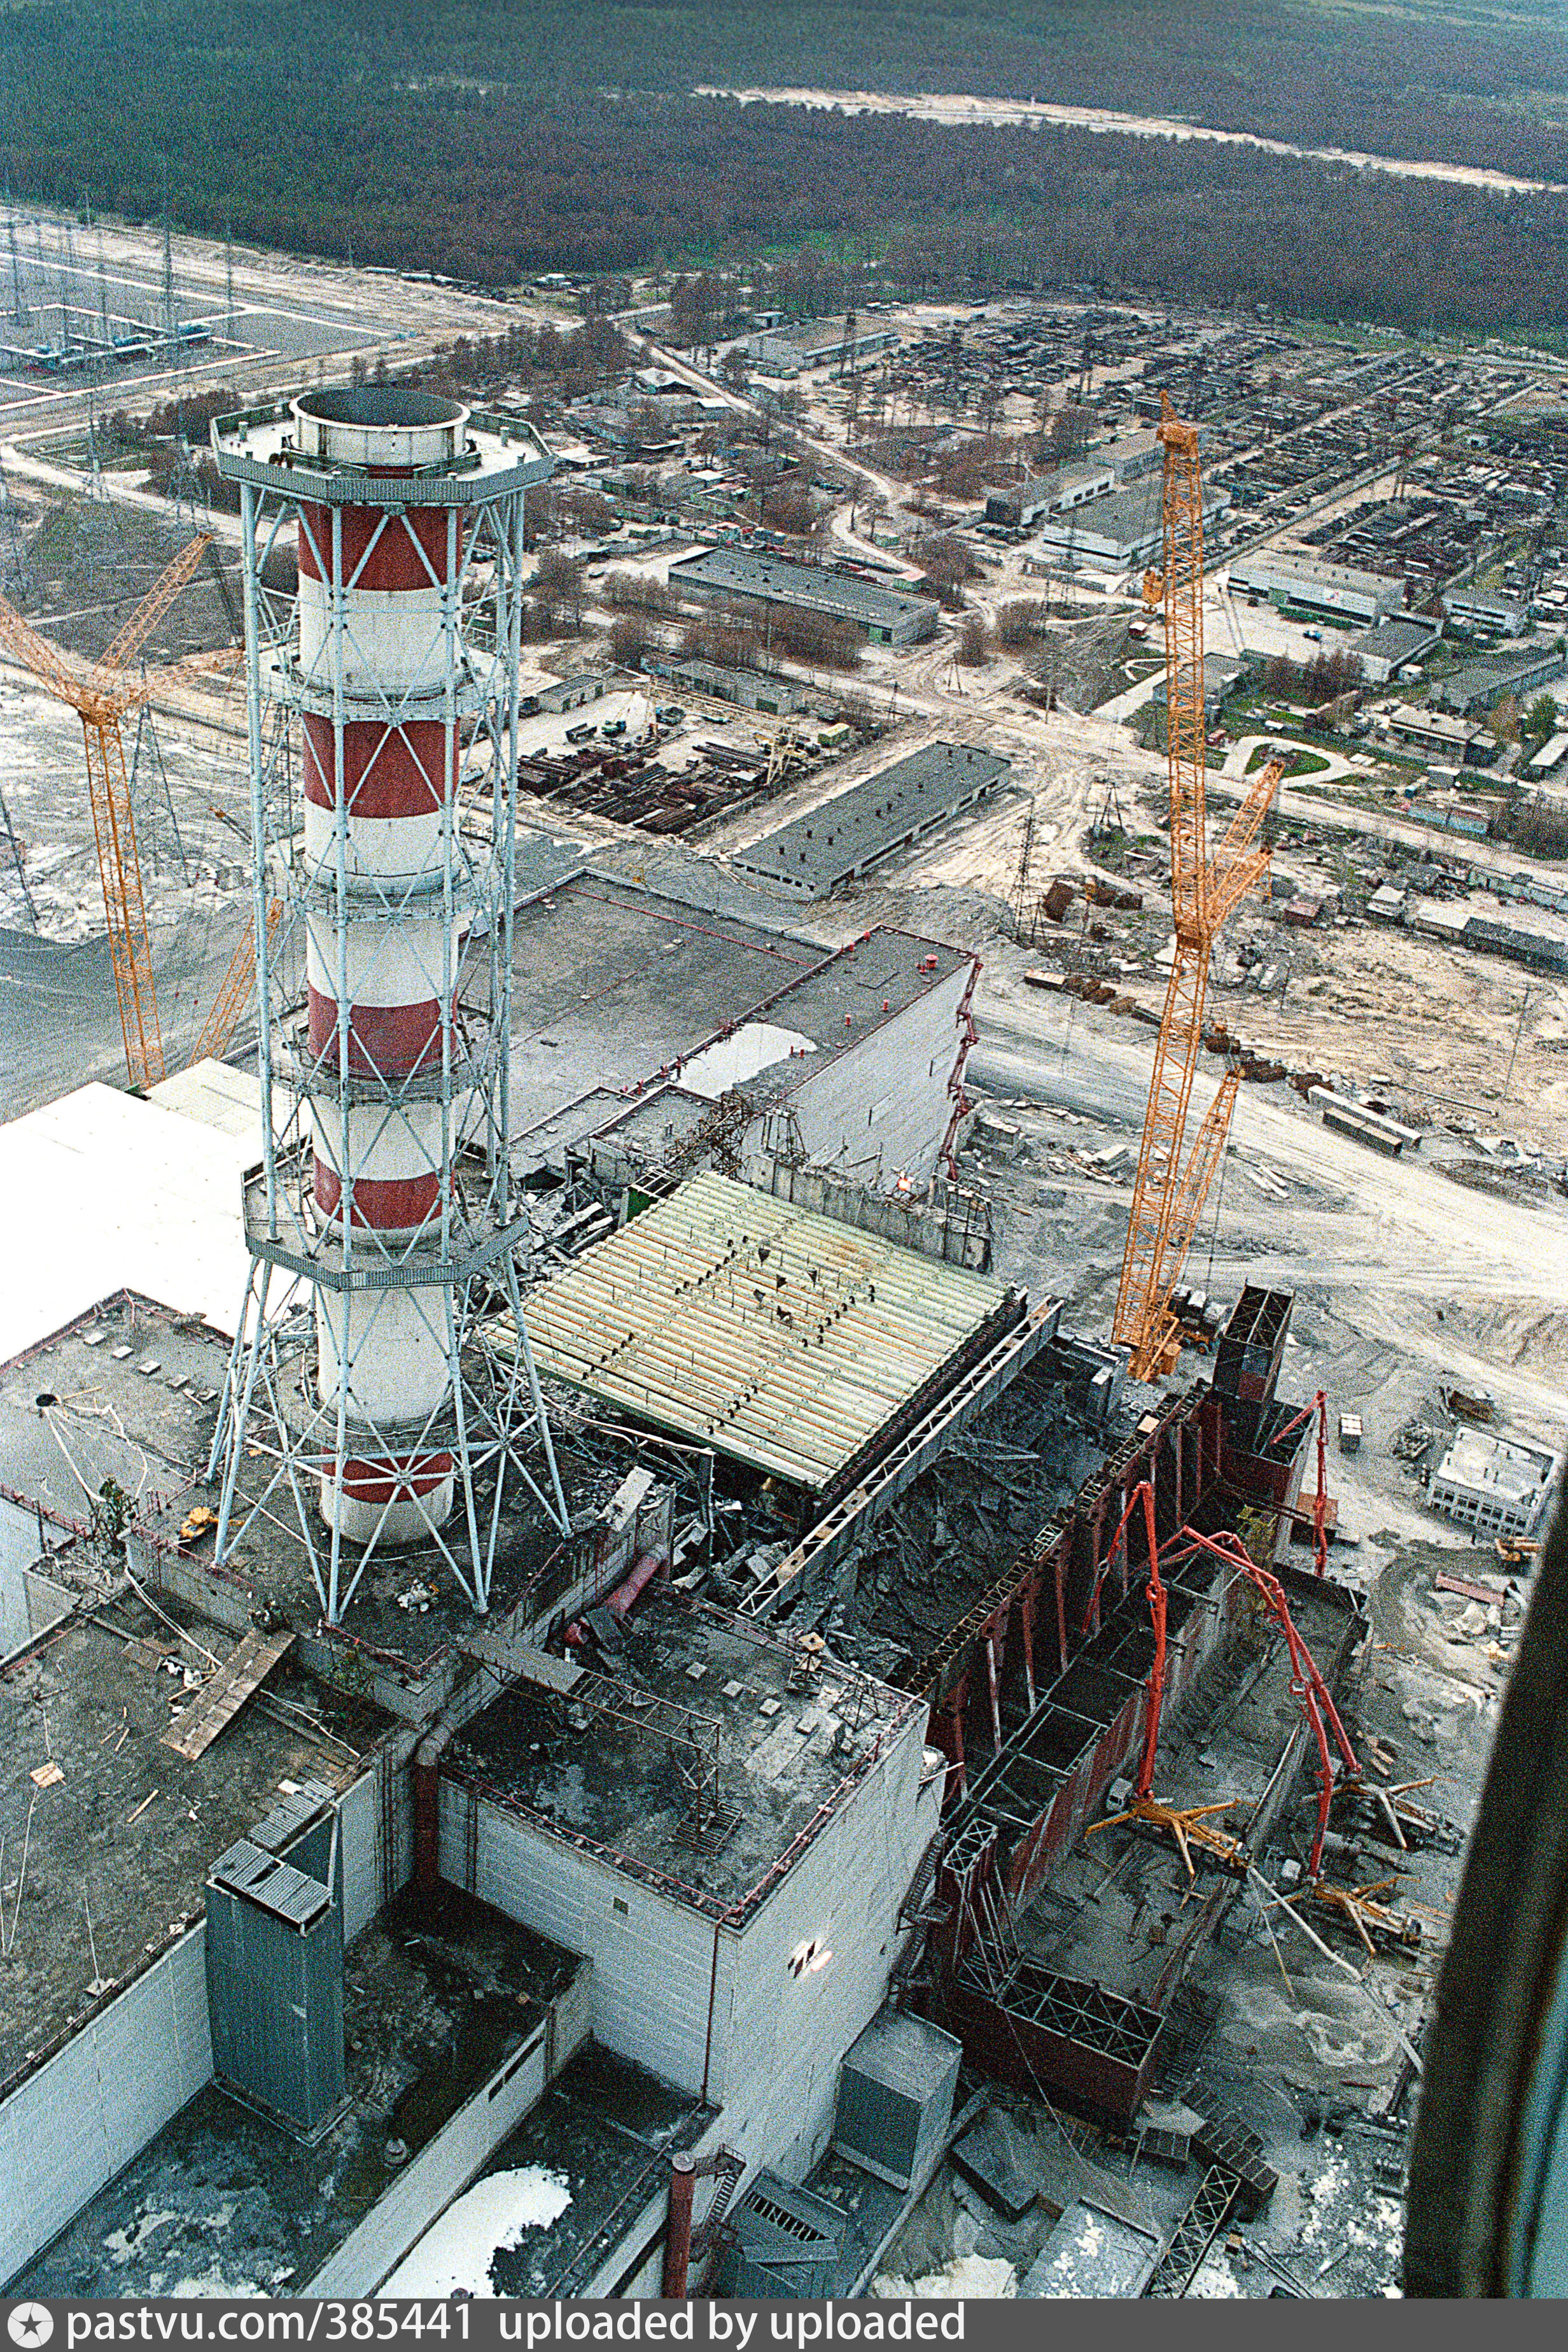 Чернобыльская аэс атомная электростанция. Атомная электростанция Чернобыль. Чернобыльская АЭС атомная станция. Взрыв на Чернобыльской АЭС 1986. Чернобыльская АЭС 1986 реактор.